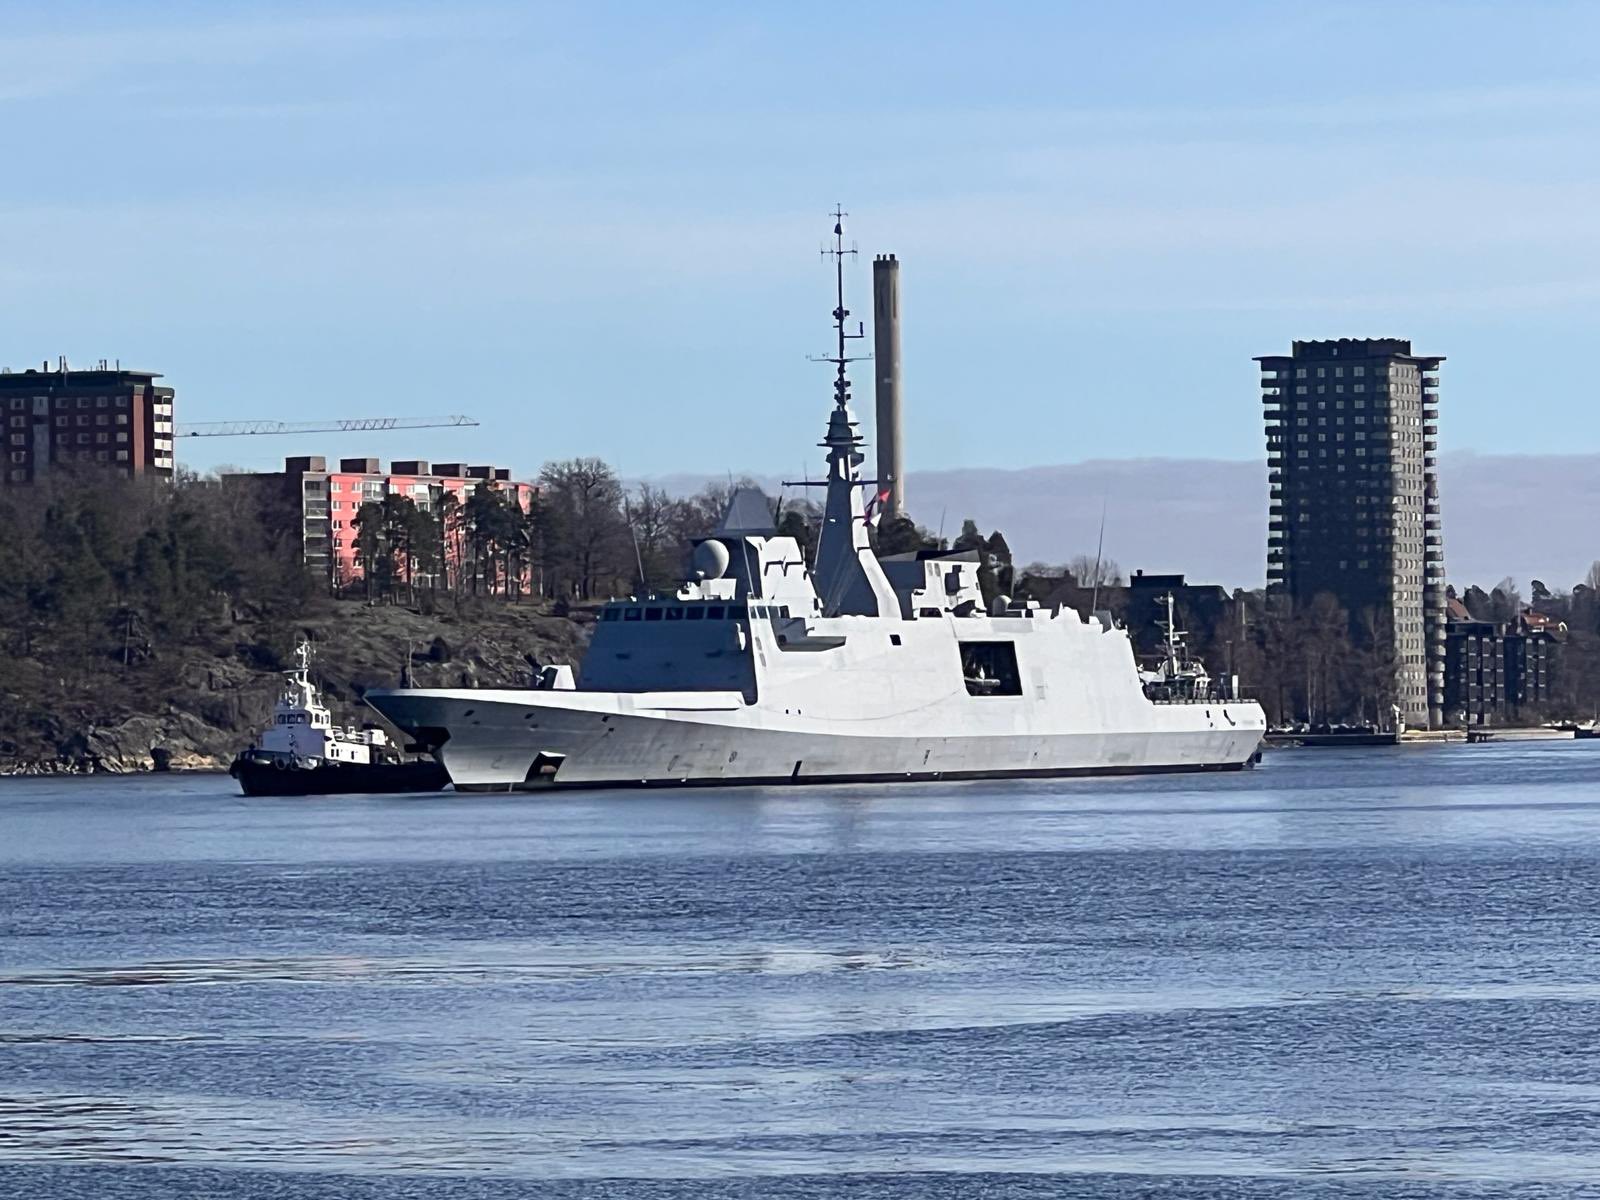 La frégate Normandie arrive dans le port de Stockholm